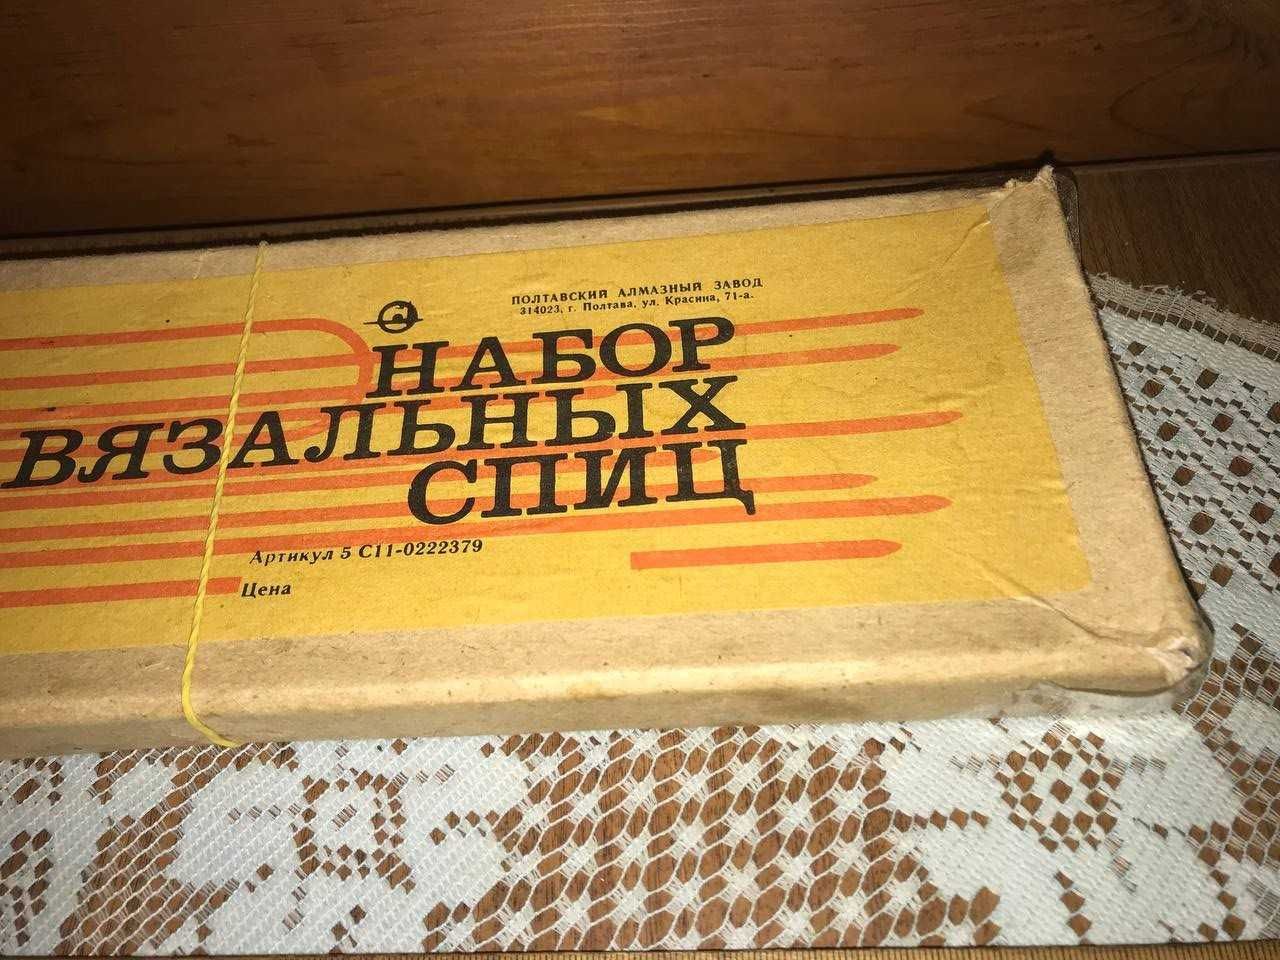 Набор вязальных спиц, СССР